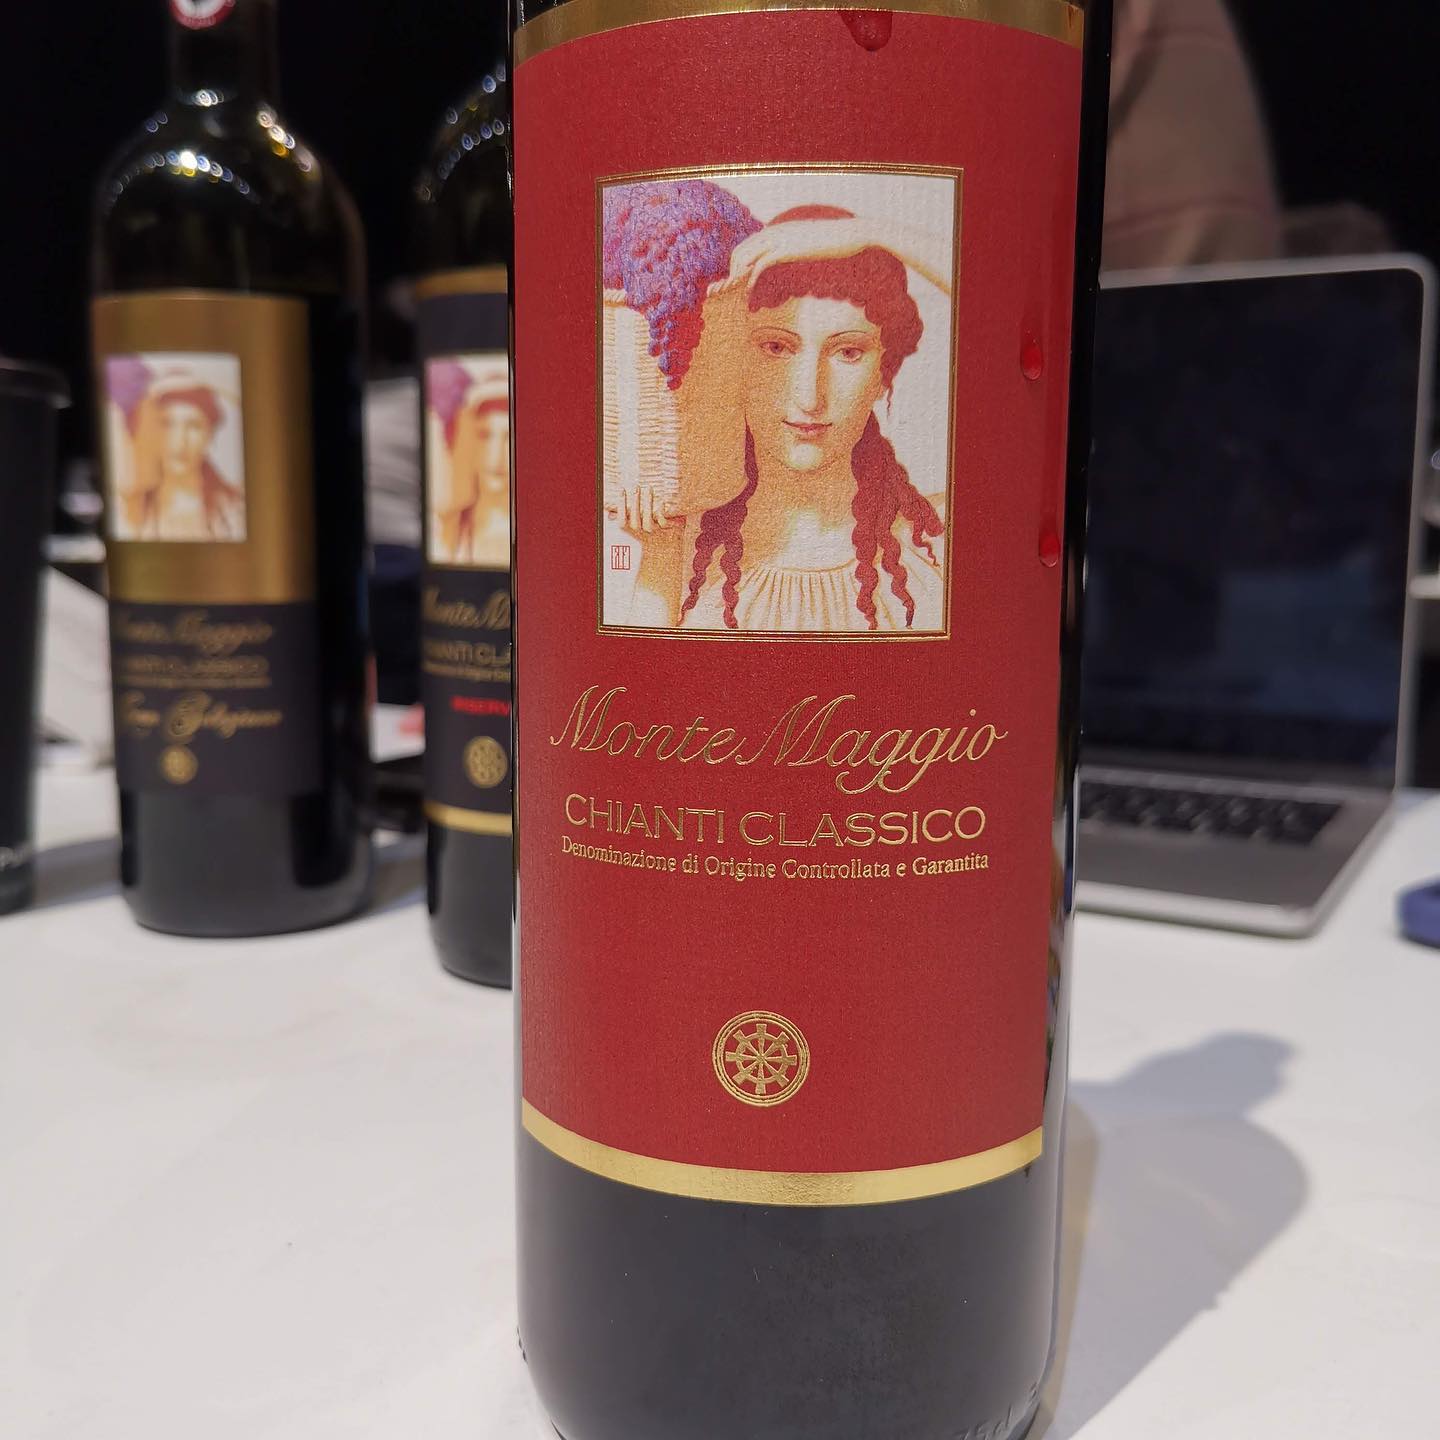 Chianti Classico Collection - Montemaggio wines